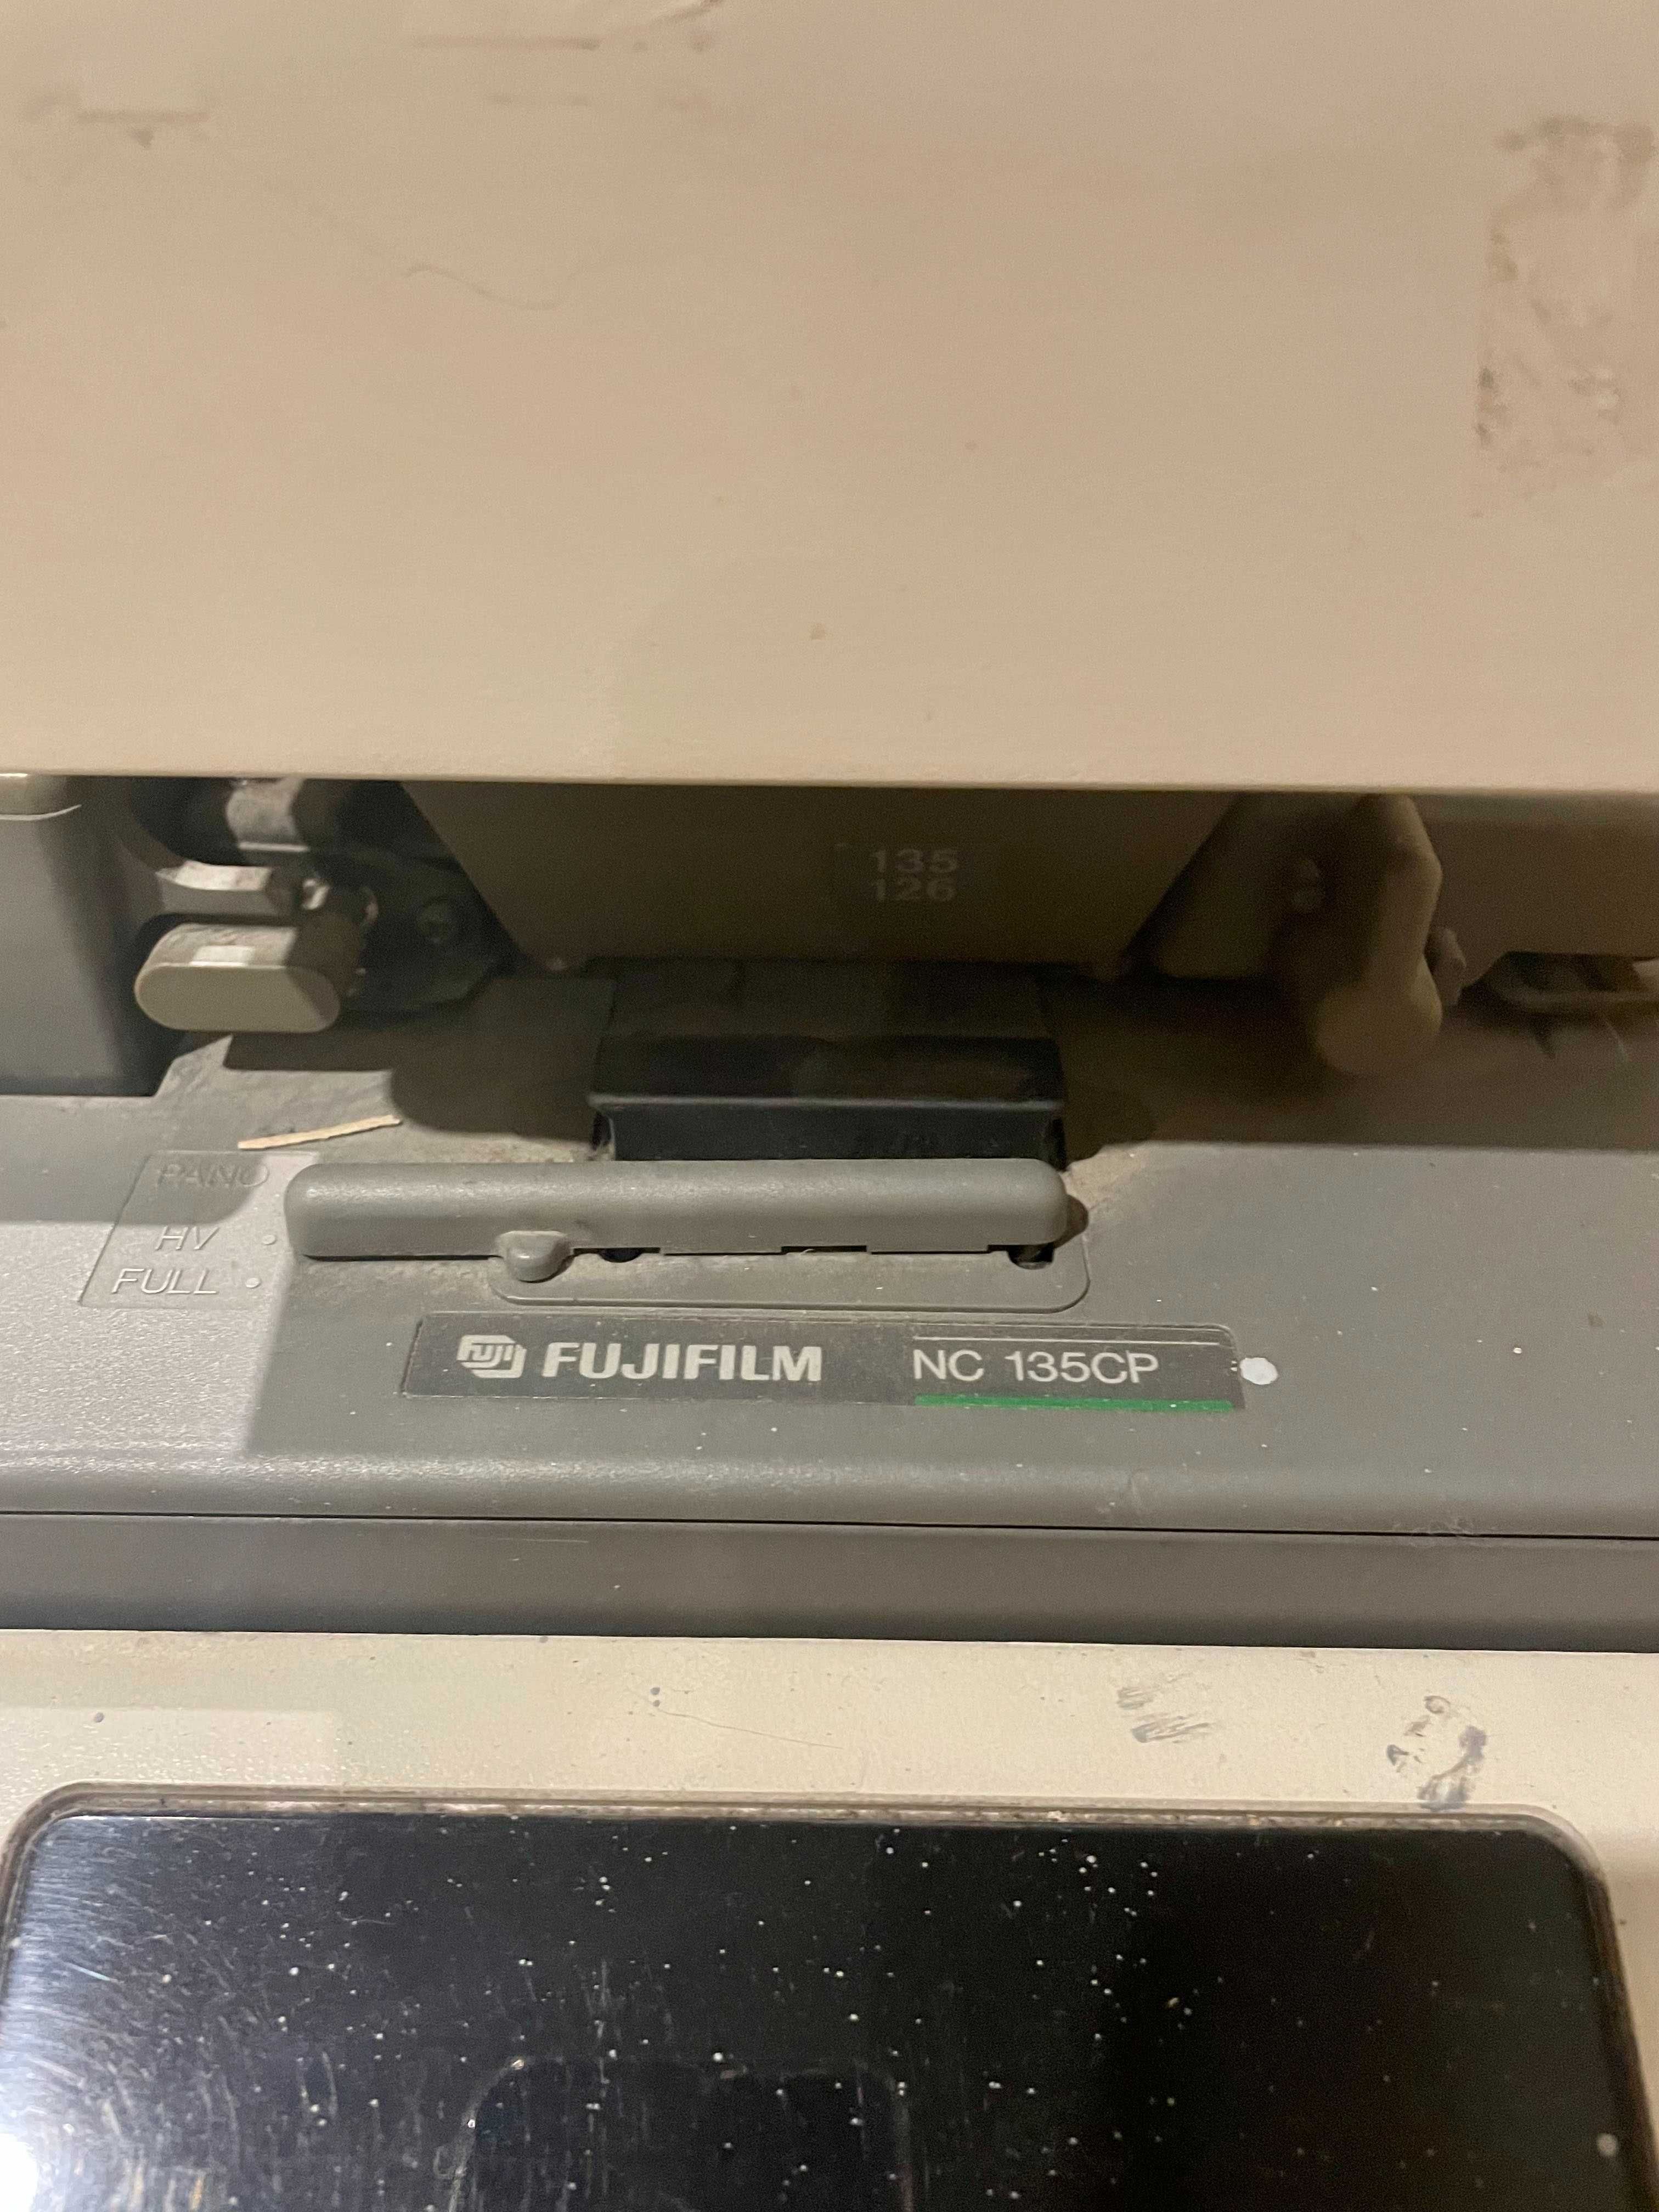 Minilab Fujifilm NC 135 CP